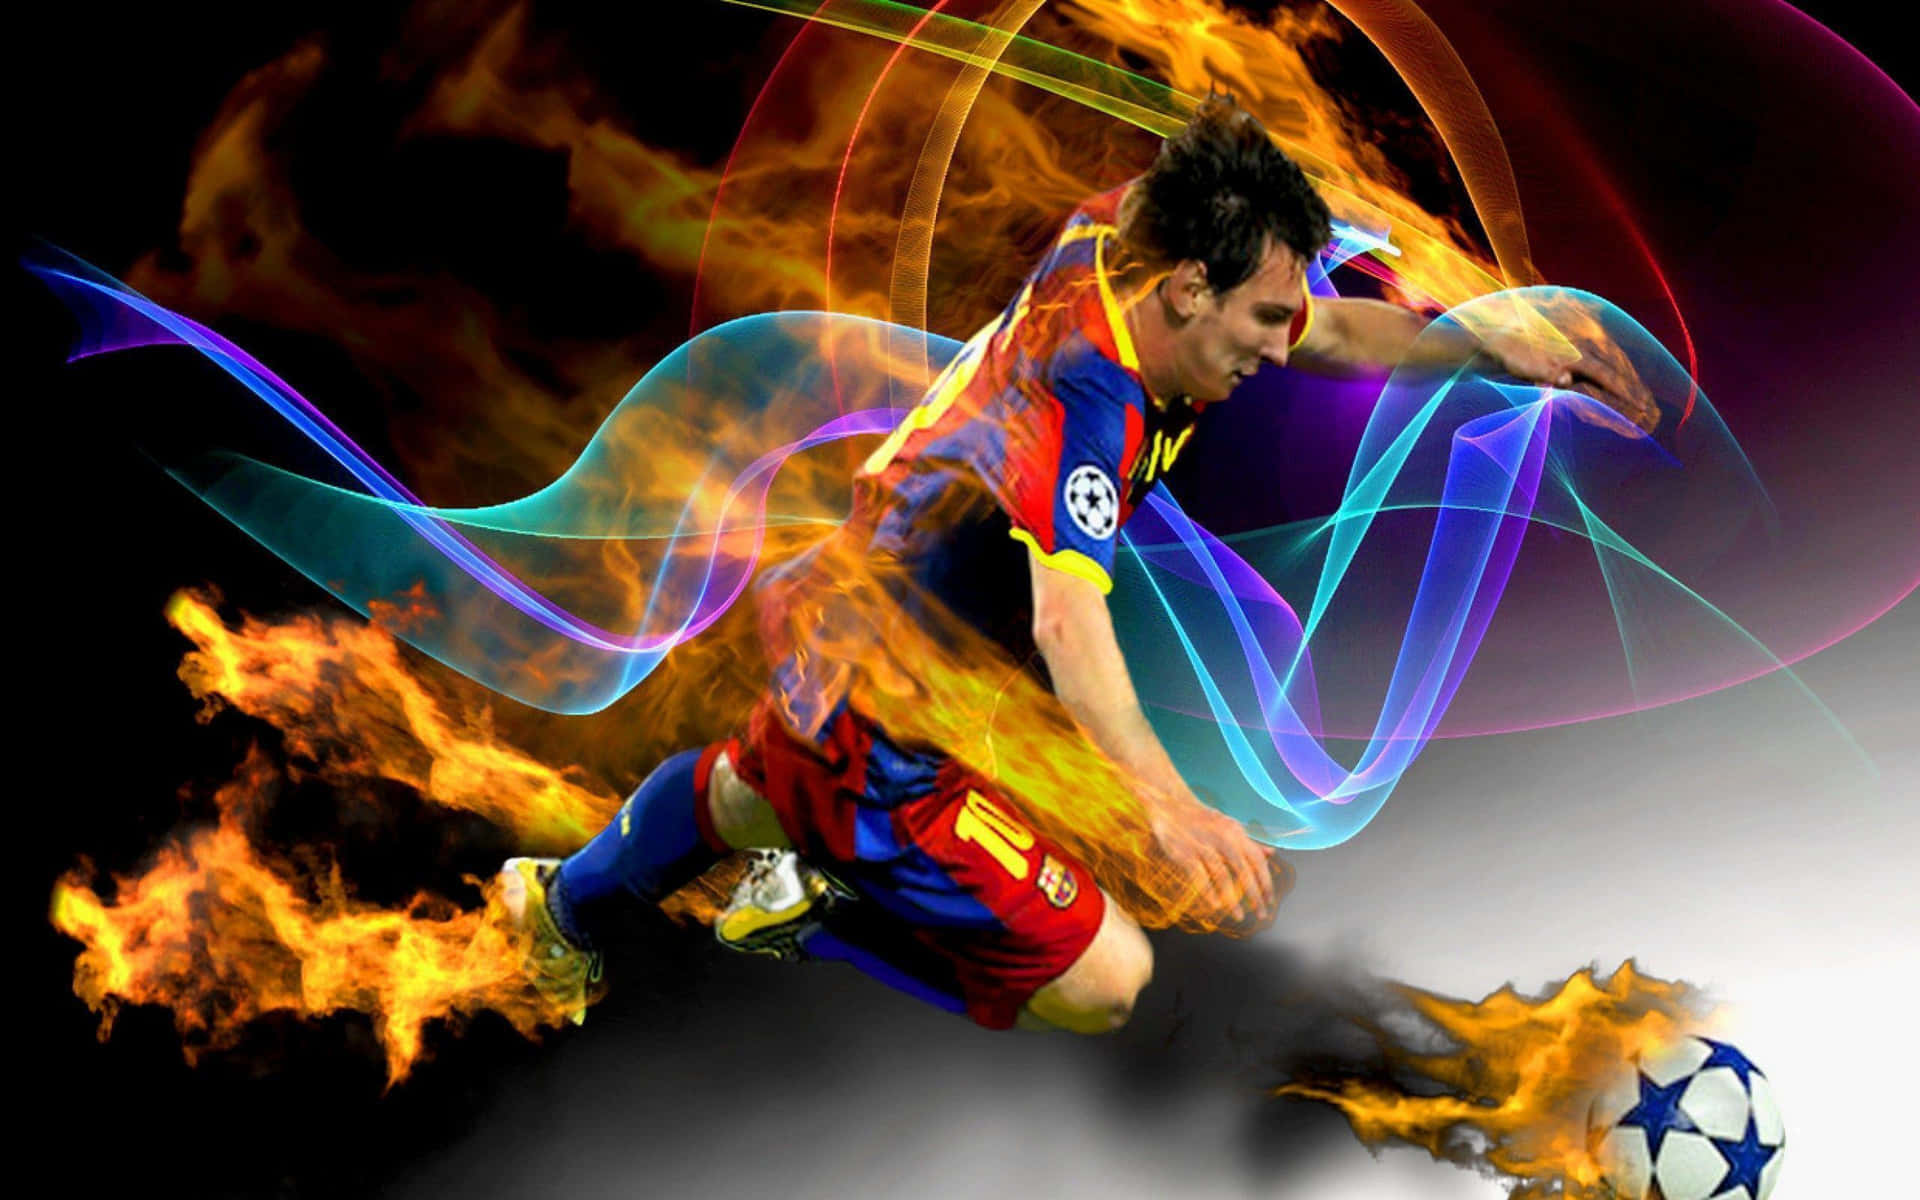 Eldigafotbollsbilder På Lionel Messi